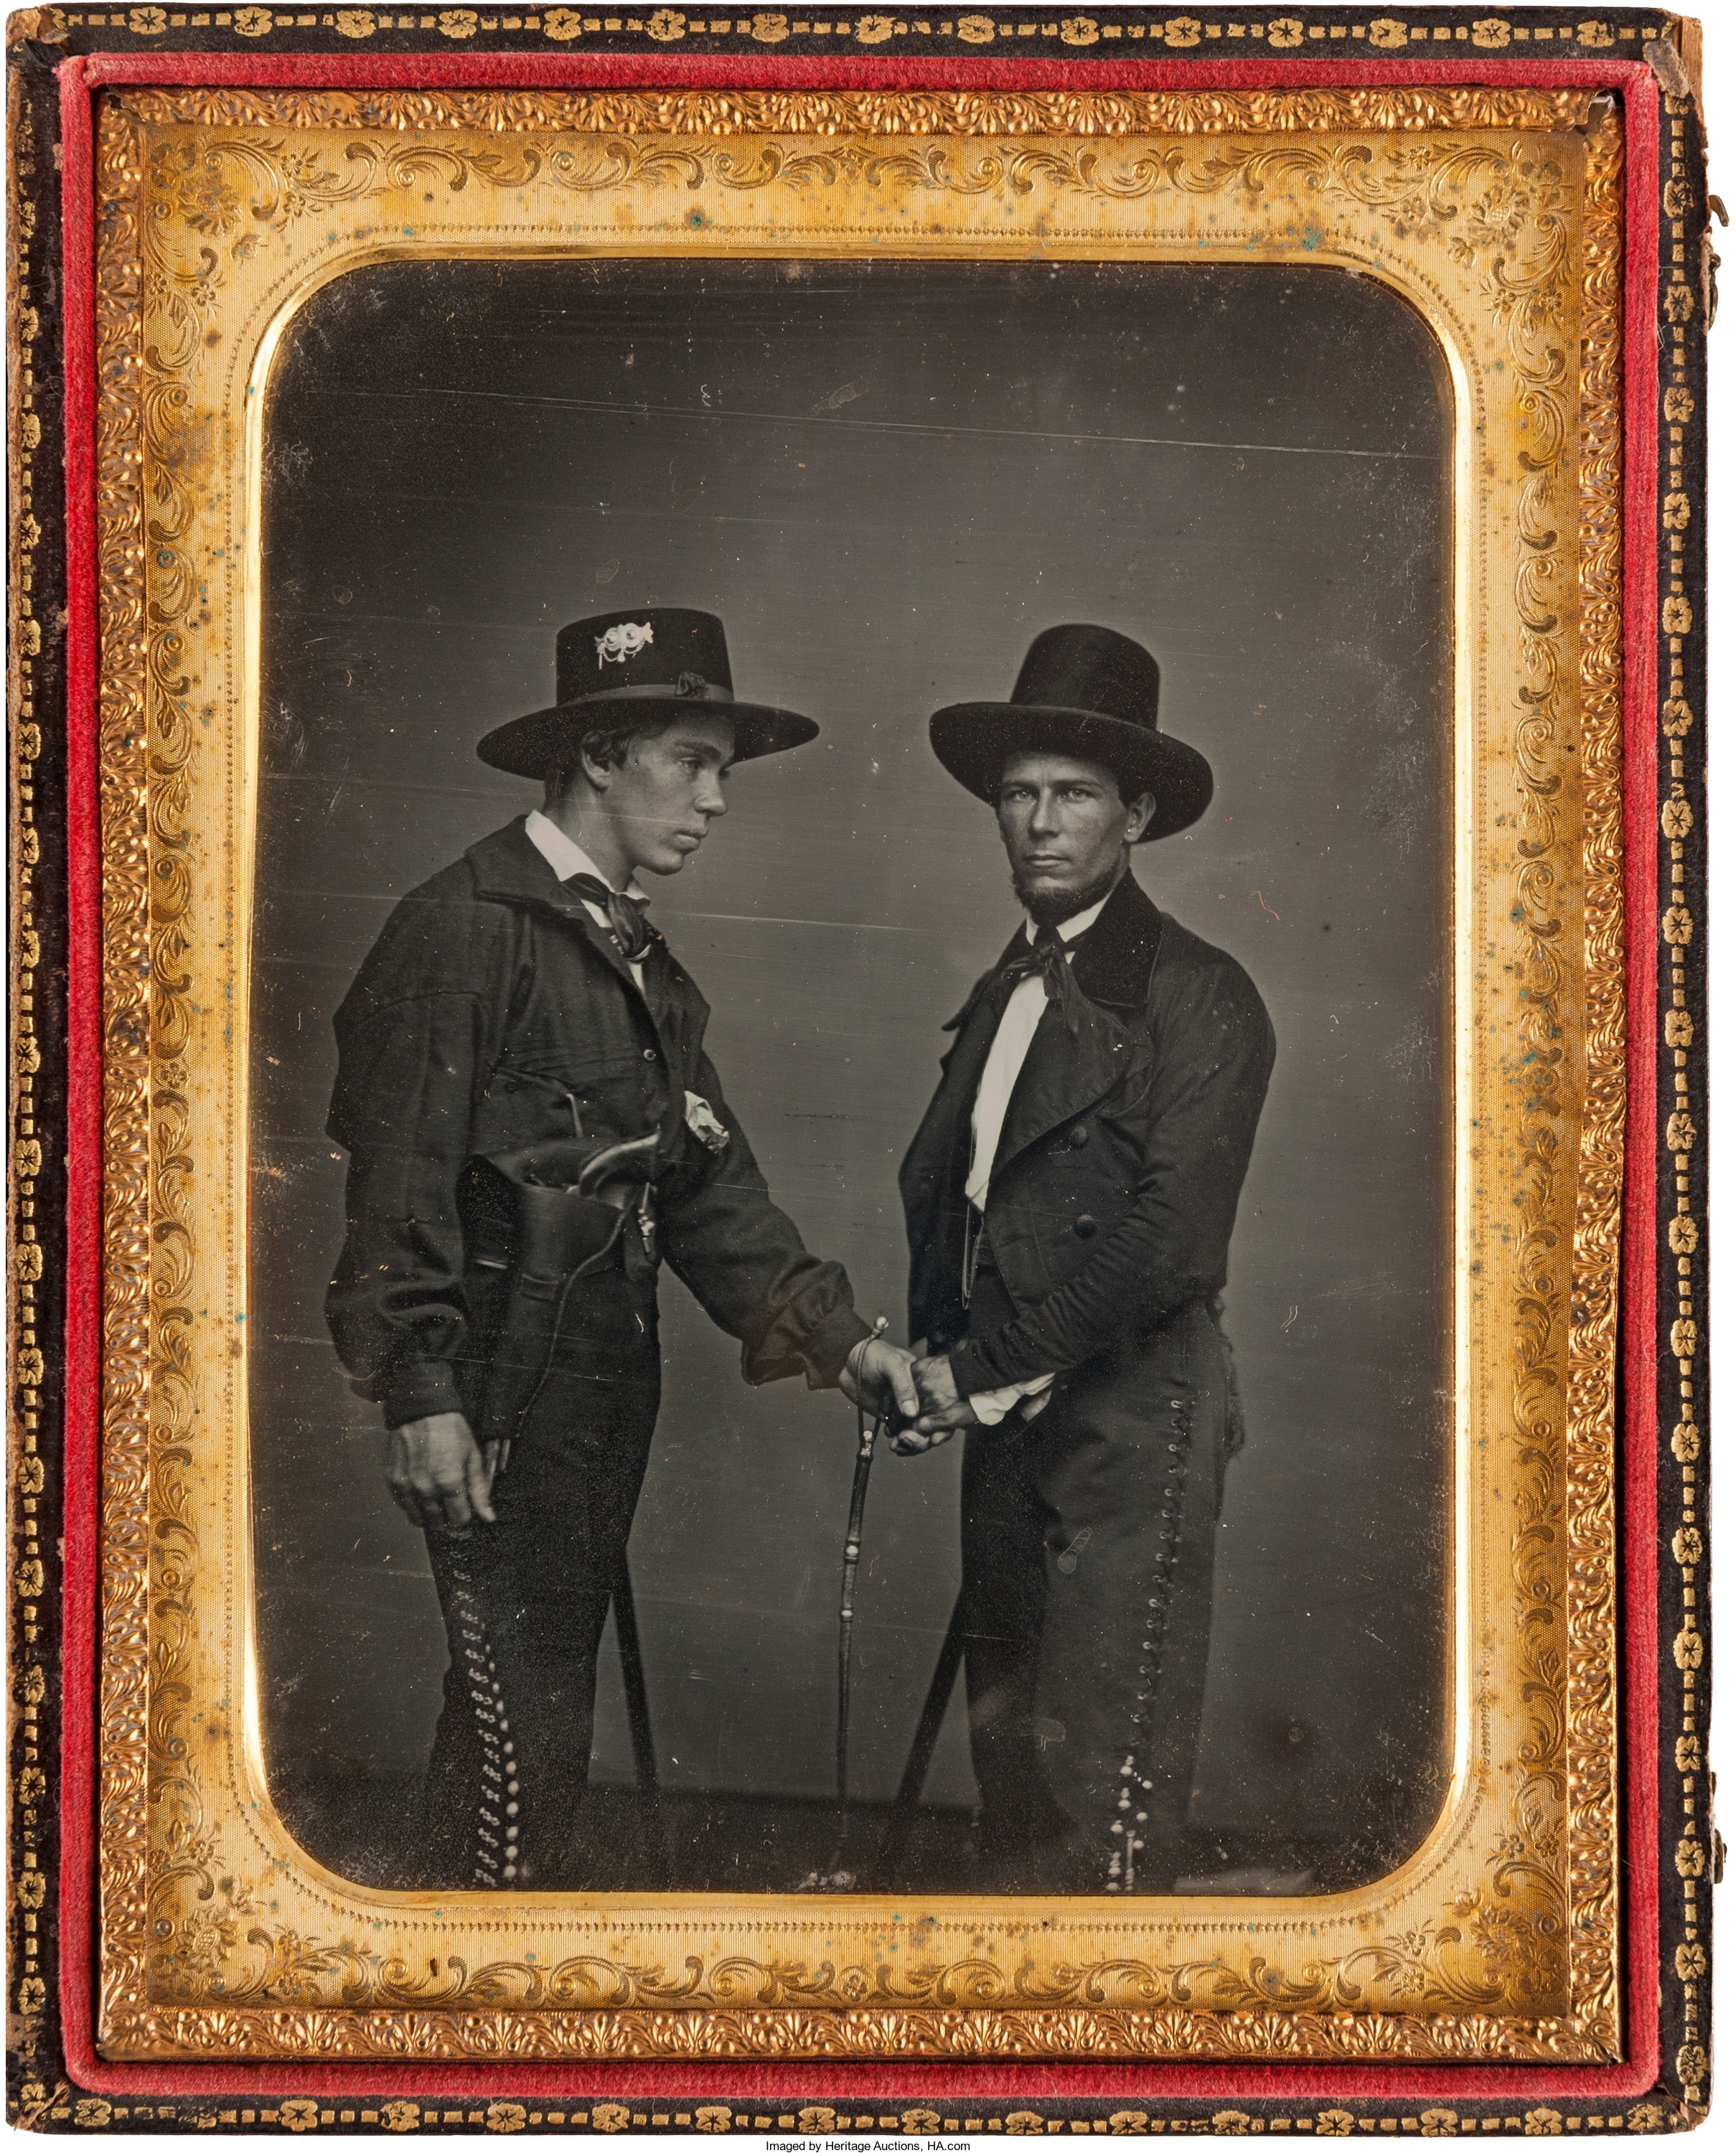 Texas Rangers, 1800s